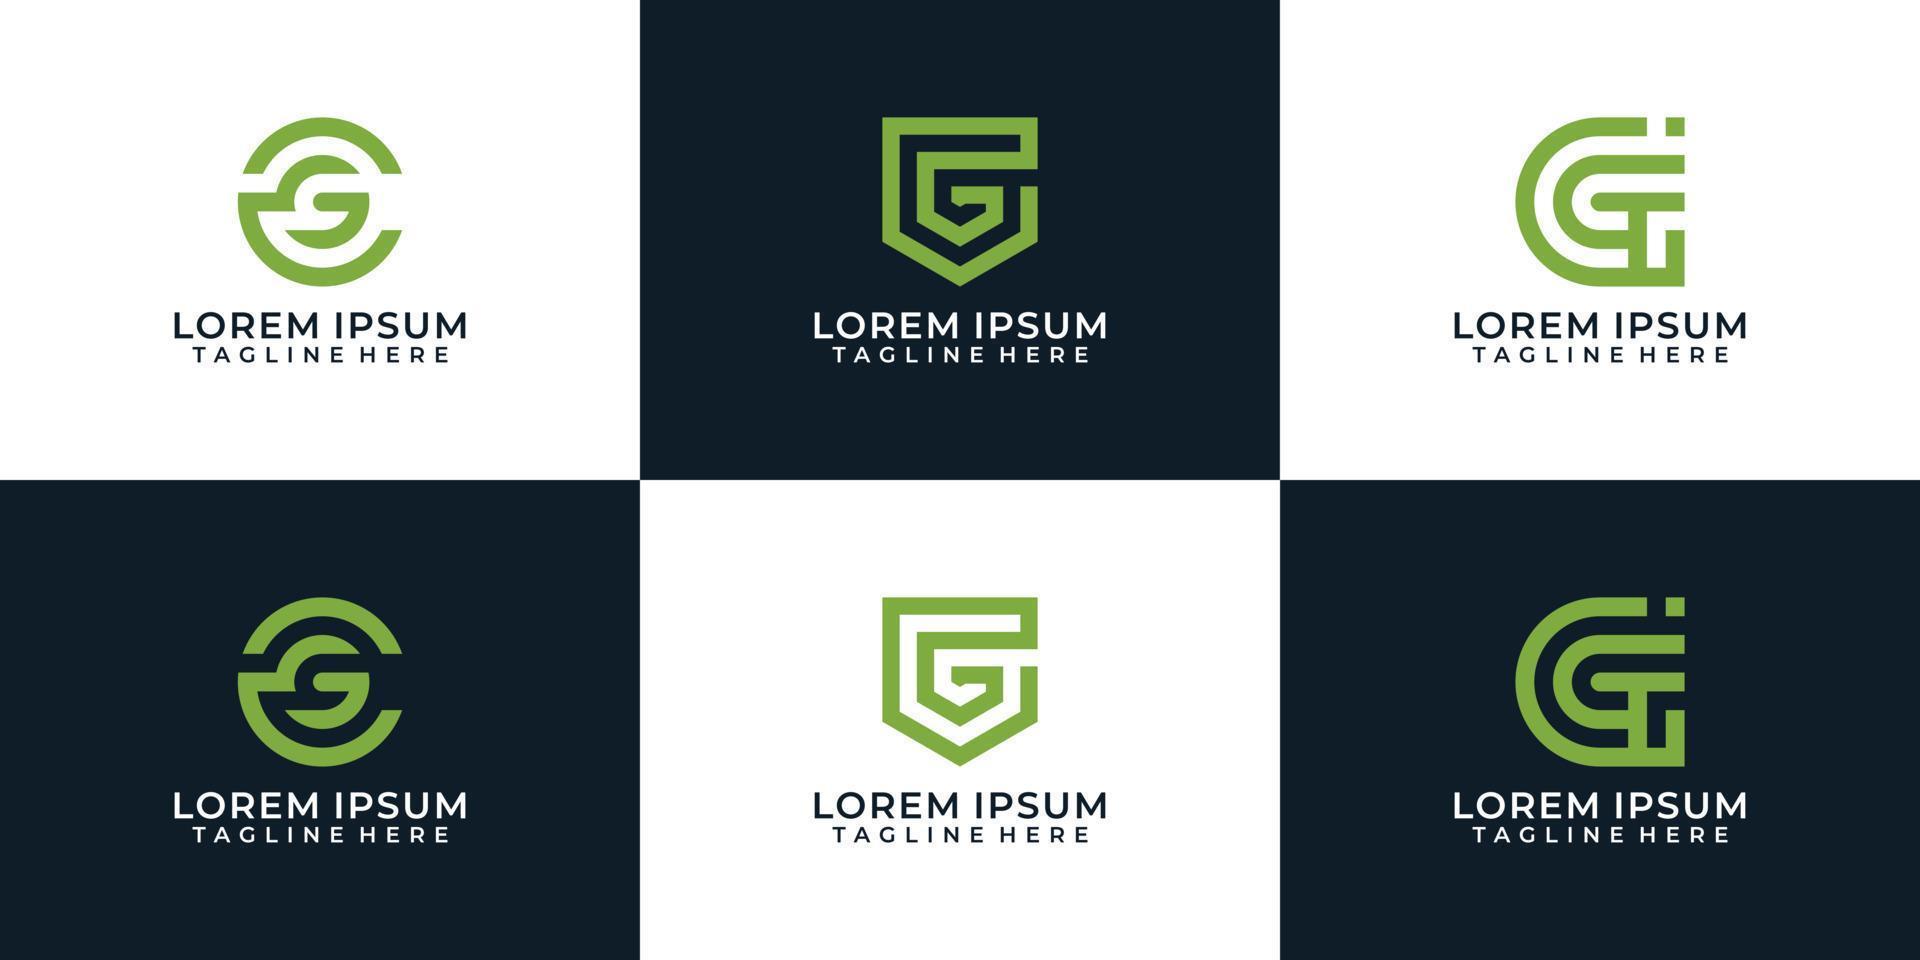 conjunto de inspiração de modelo de design de logotipo de letra g criativa vetor